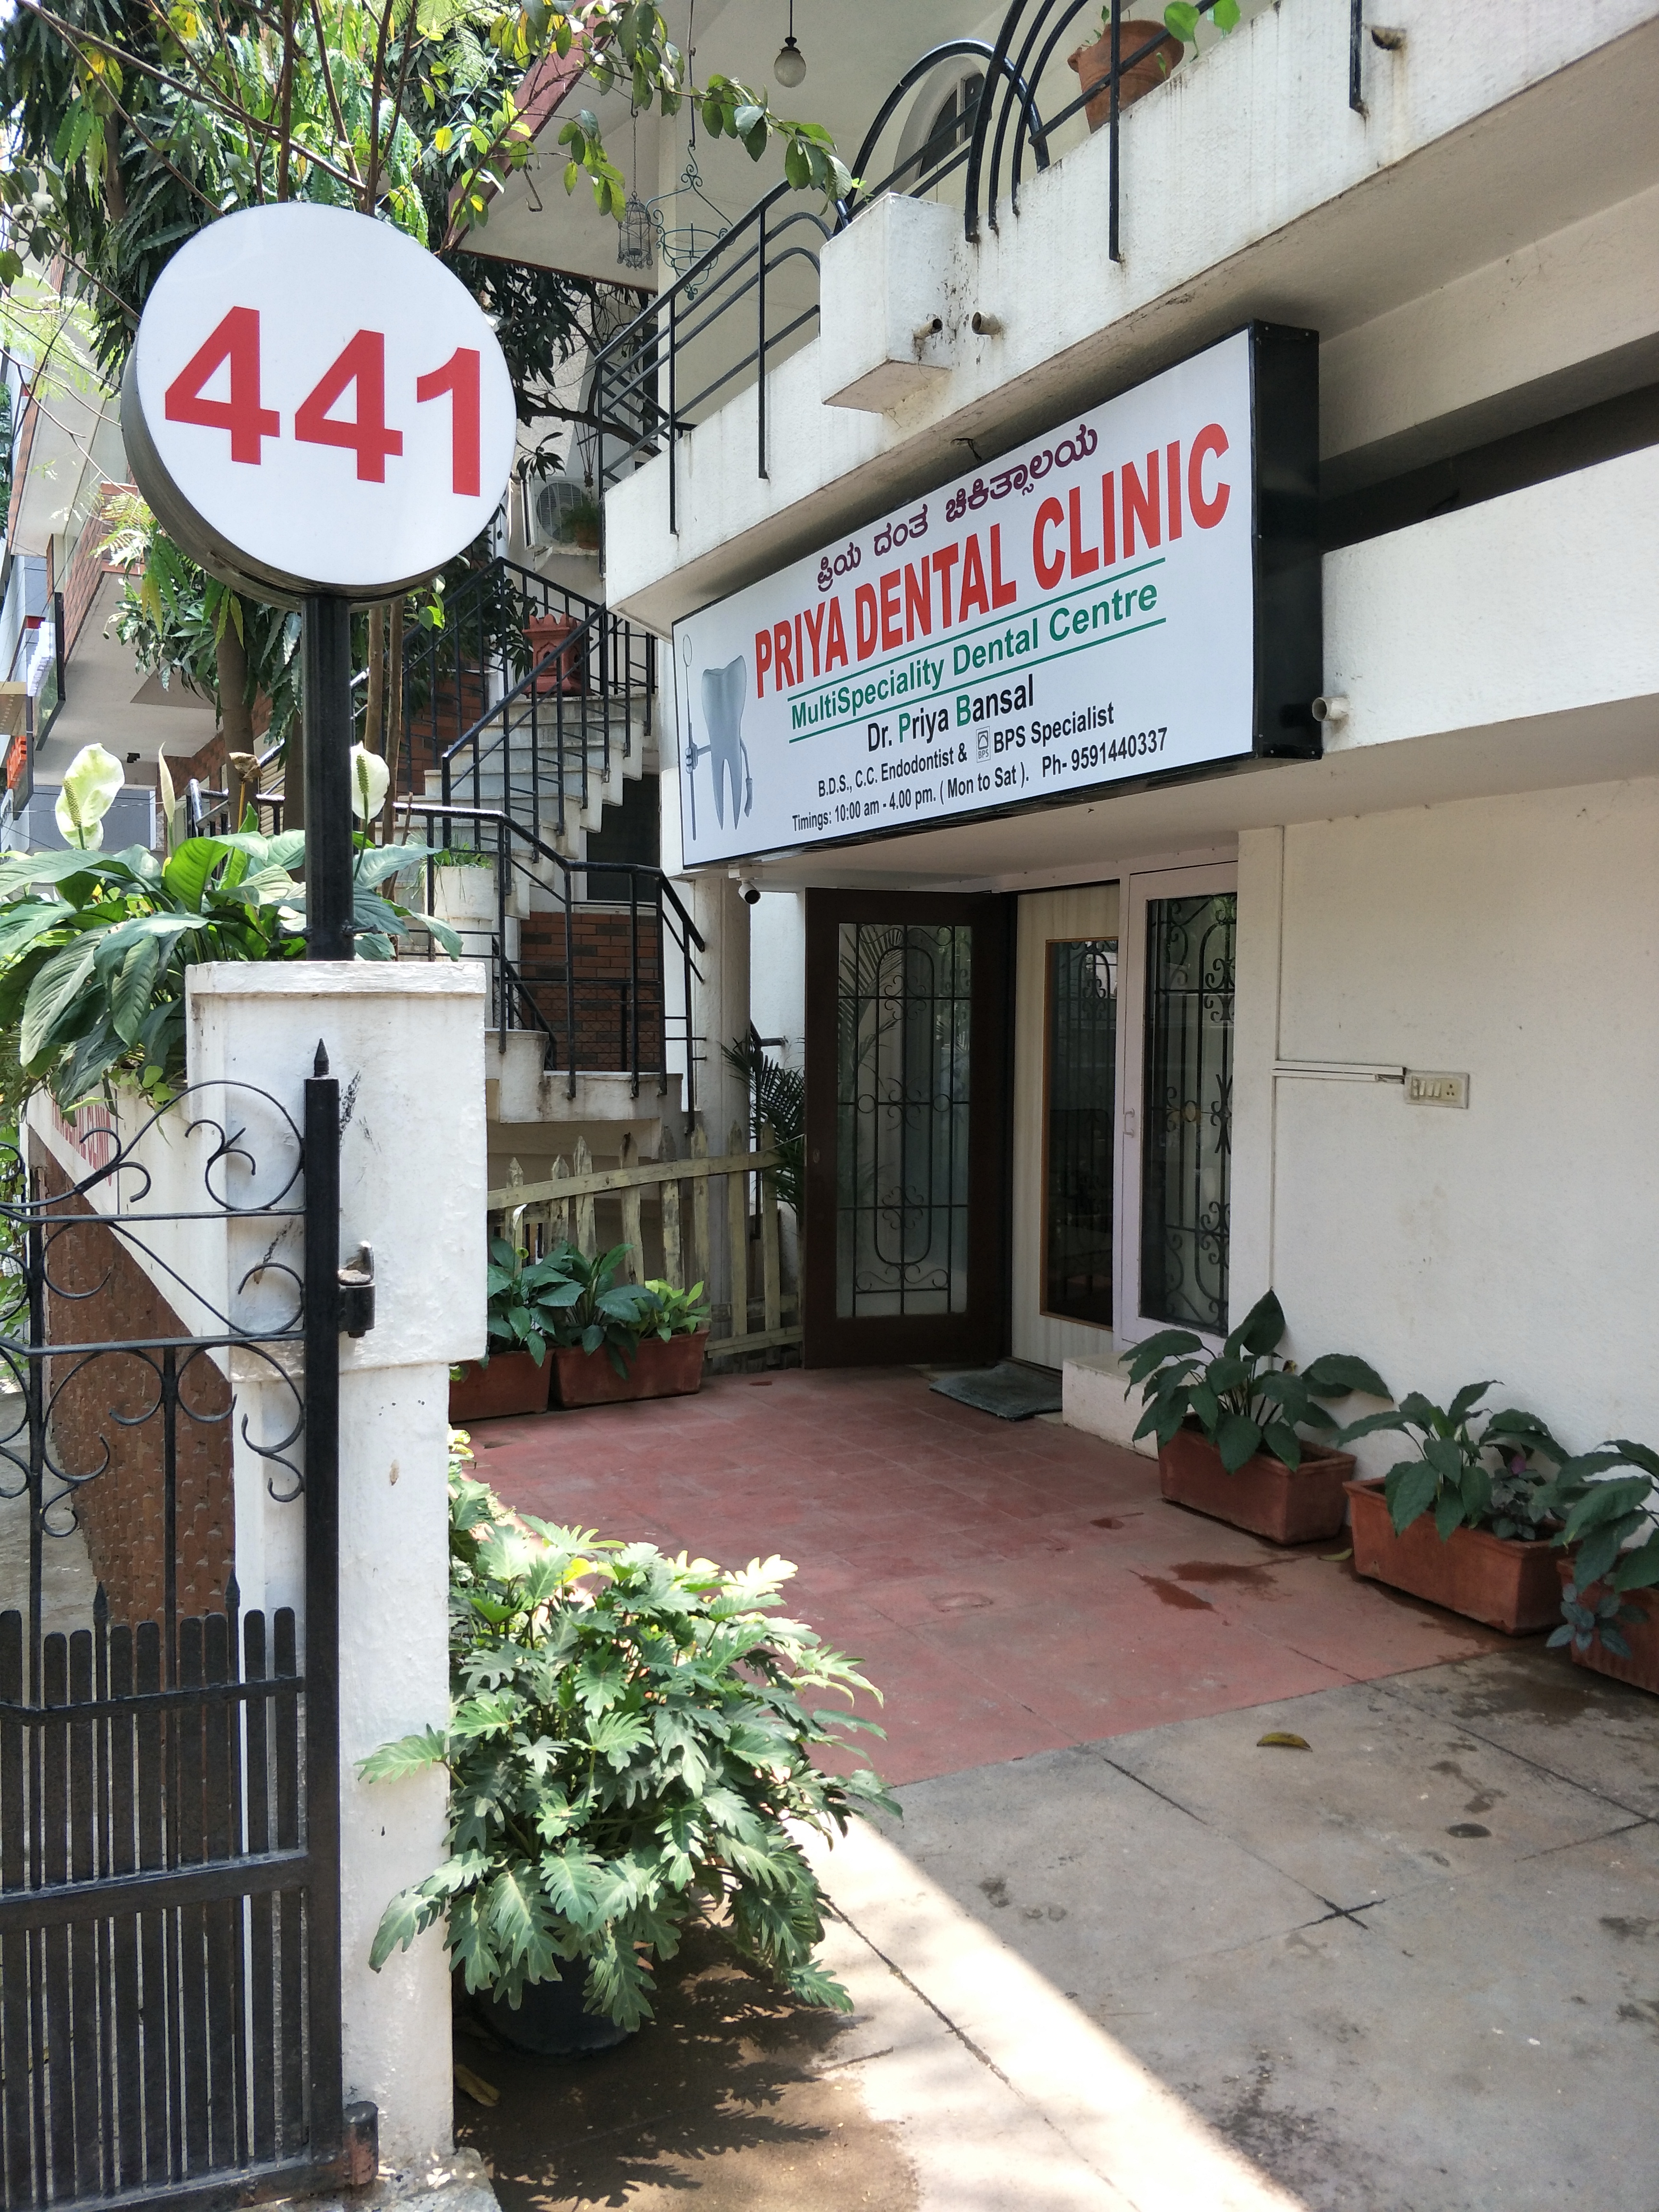 Priya Dental Clinic|Veterinary|Medical Services